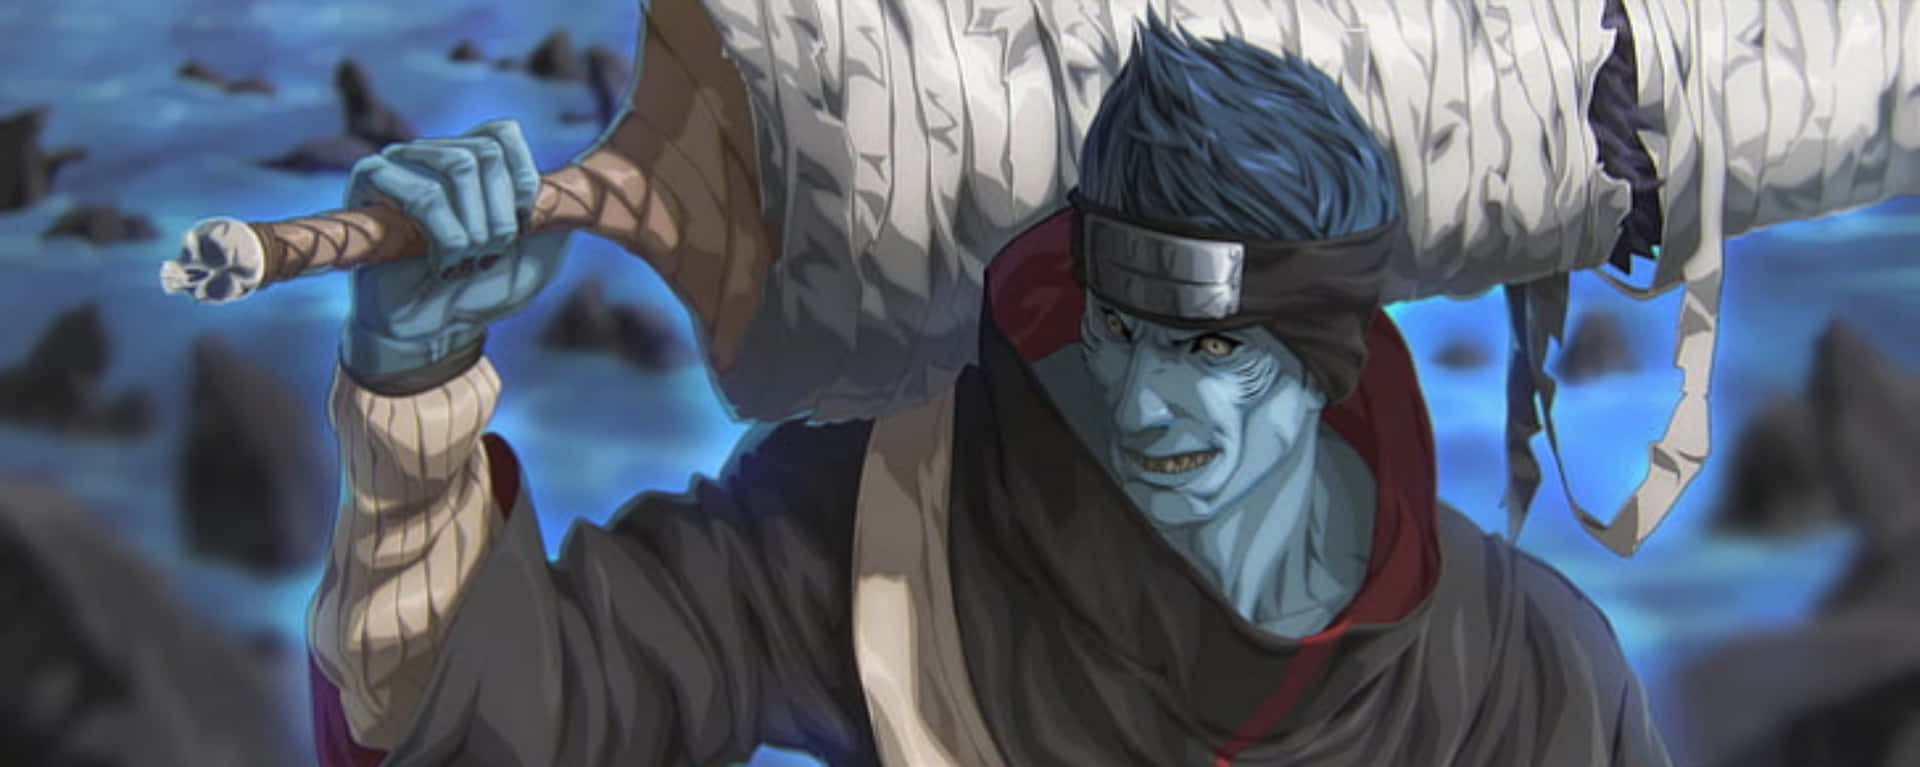 En mand med blåt hår, der holder et stort sværd skingrende Wallpaper